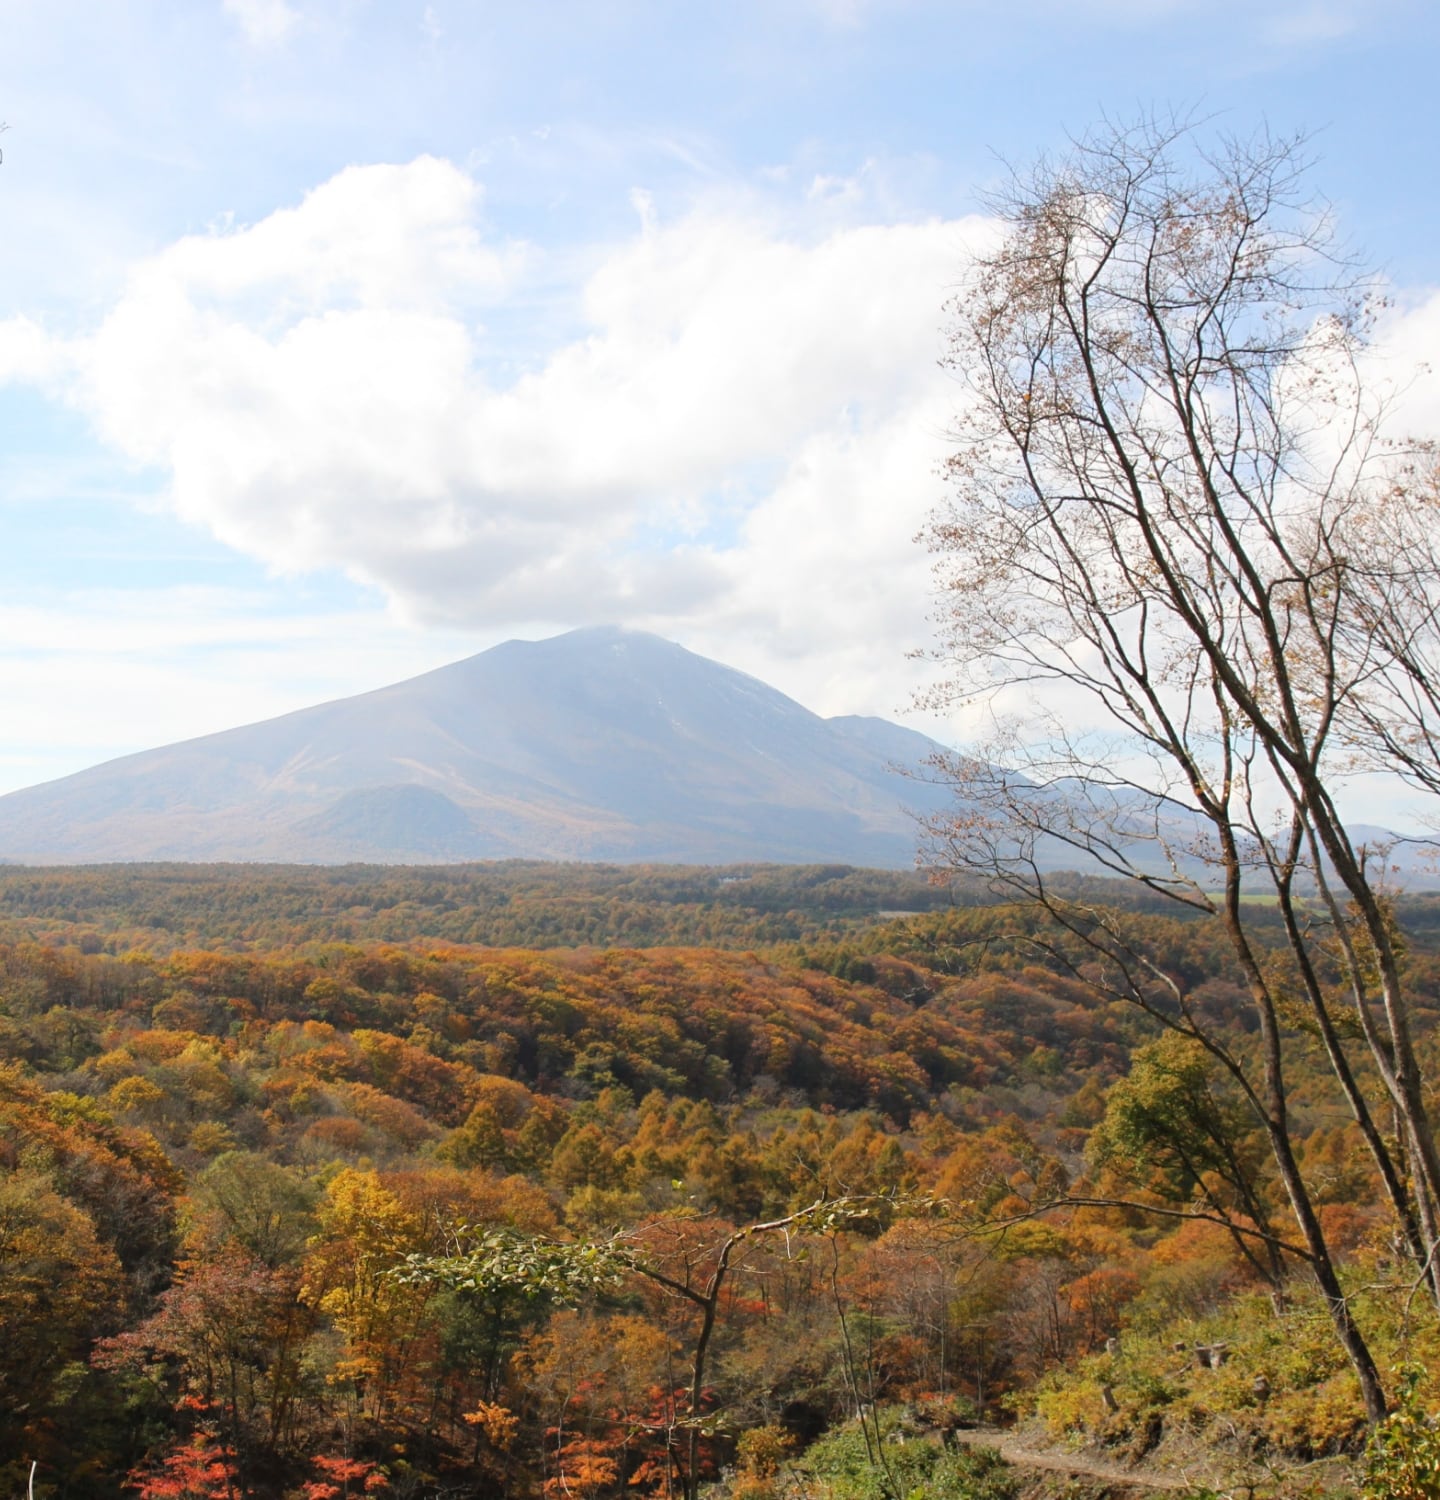 migakiba kitakaruizawaのイメージ画像。浅間山と紅葉する樹林が写っています。